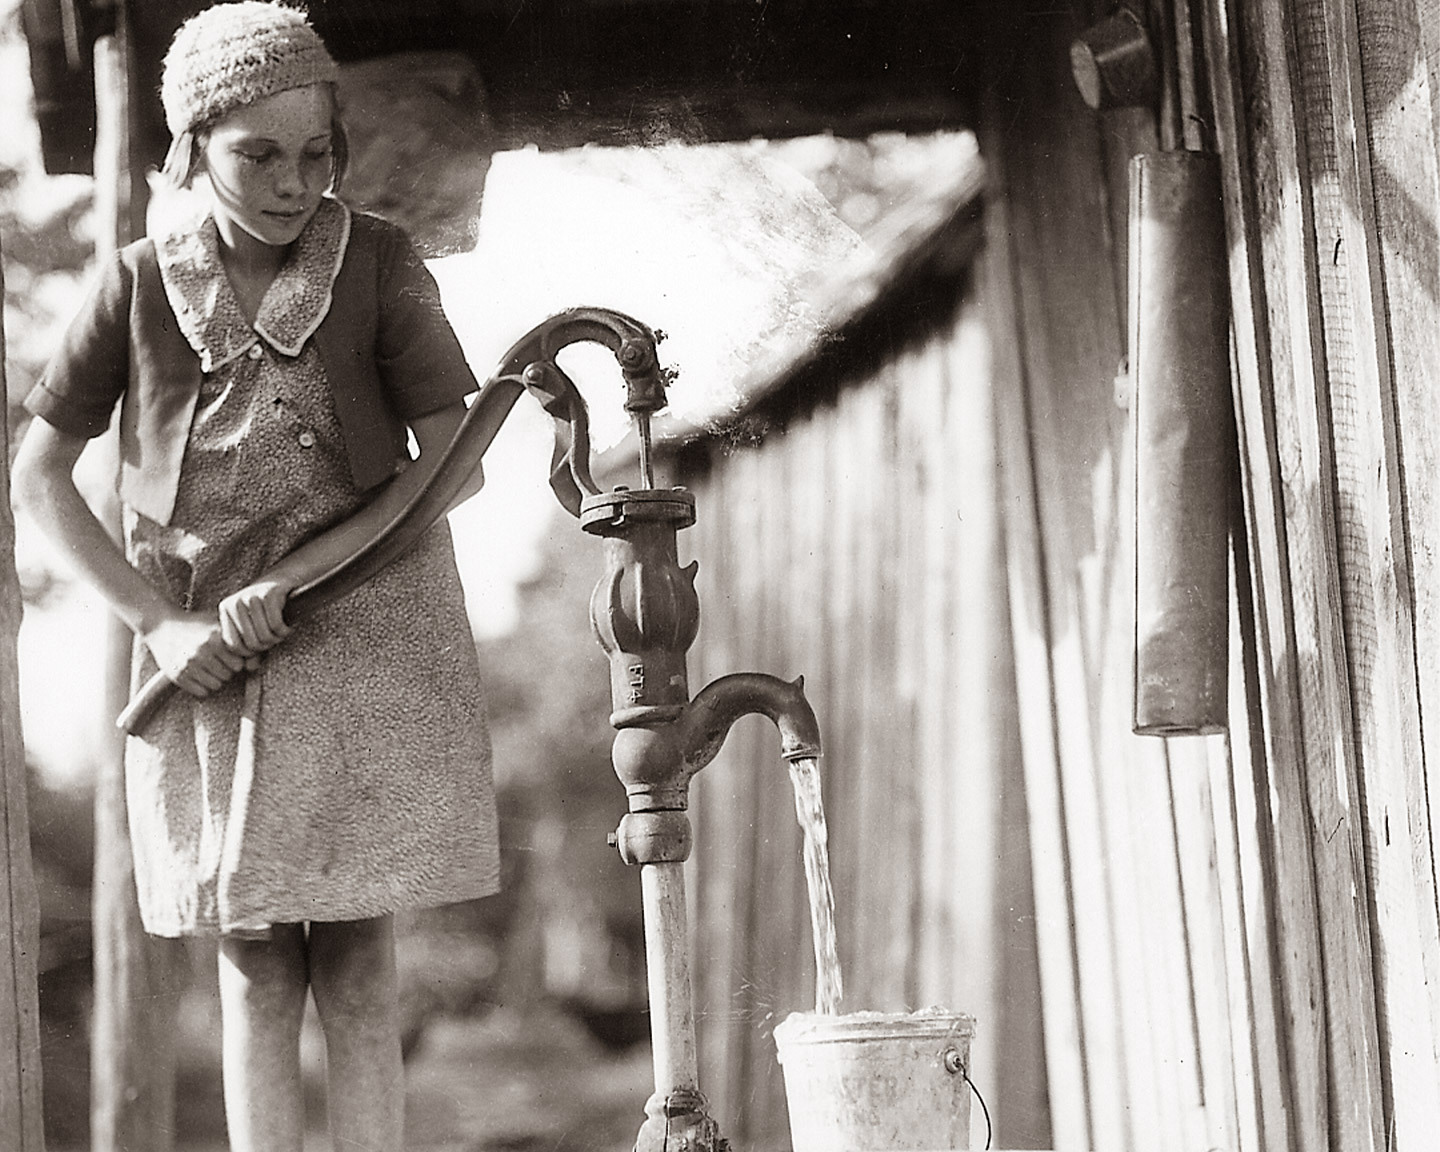 Girl pumping water